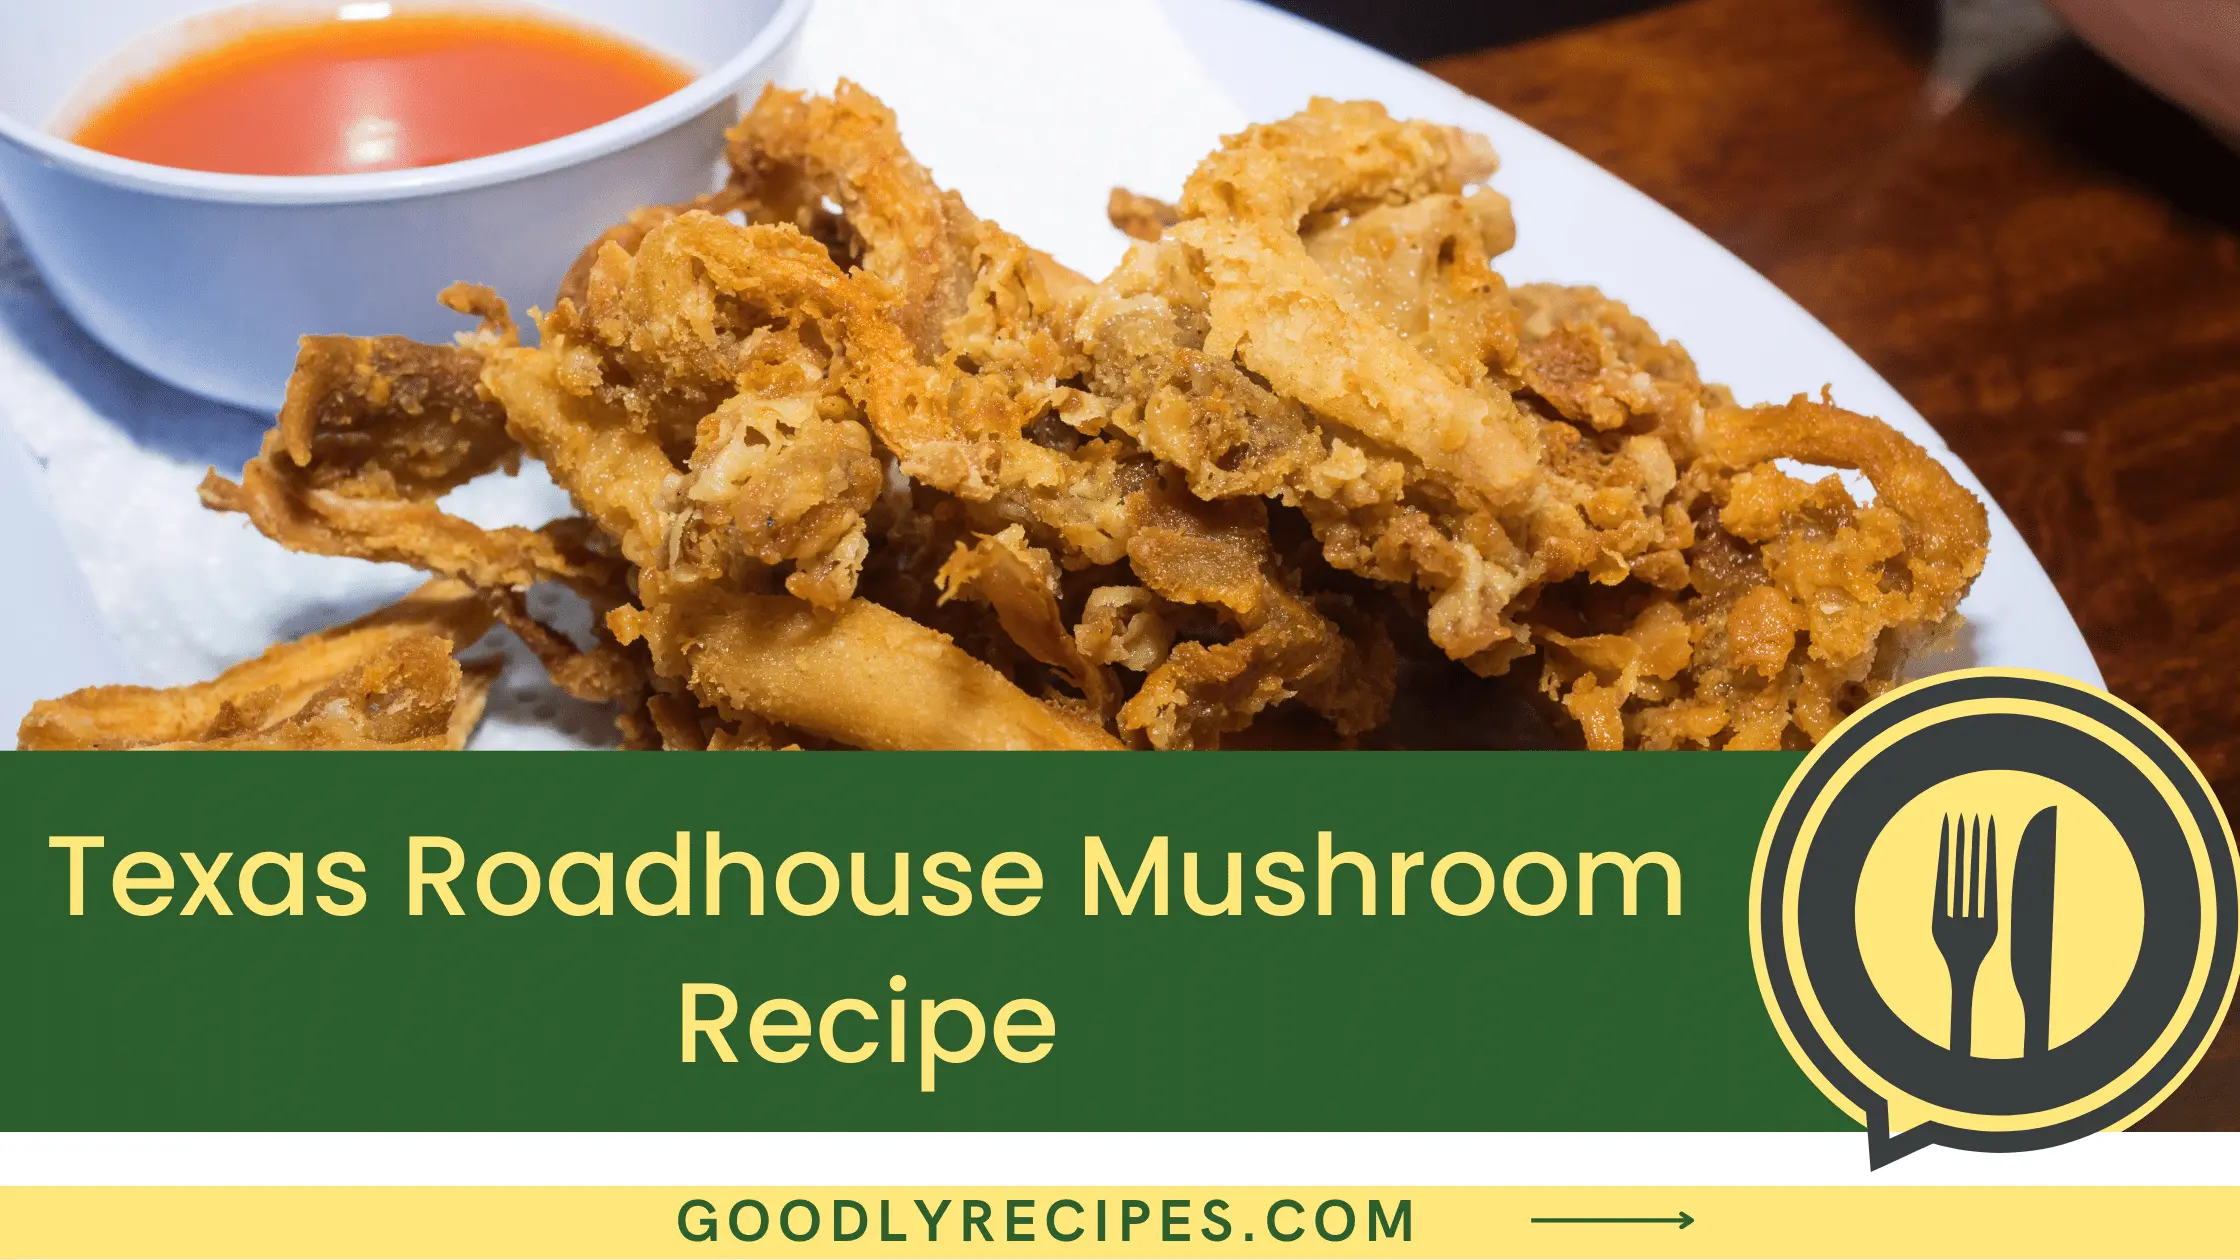 Texas Roadhouse Mushroom Recipe